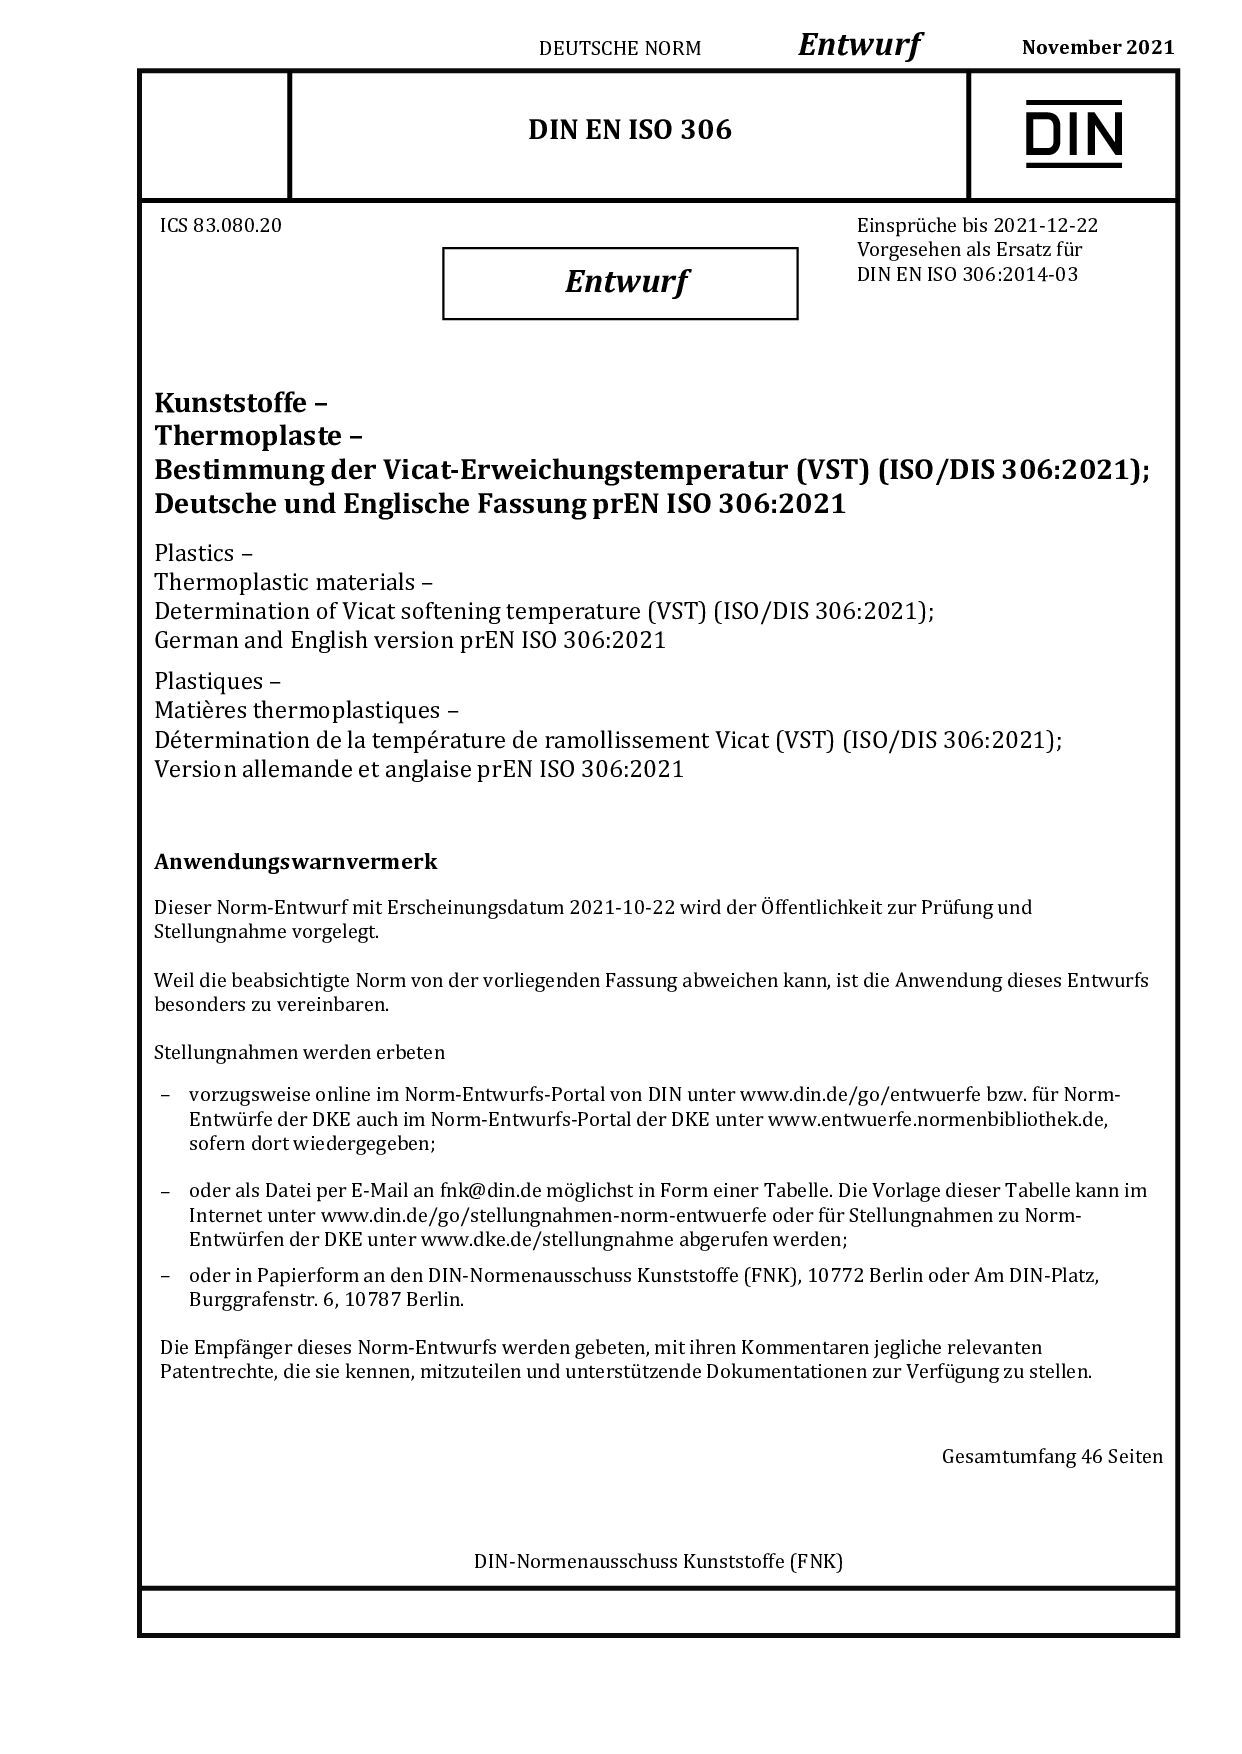 DIN EN ISO 306 E:2021-11封面图